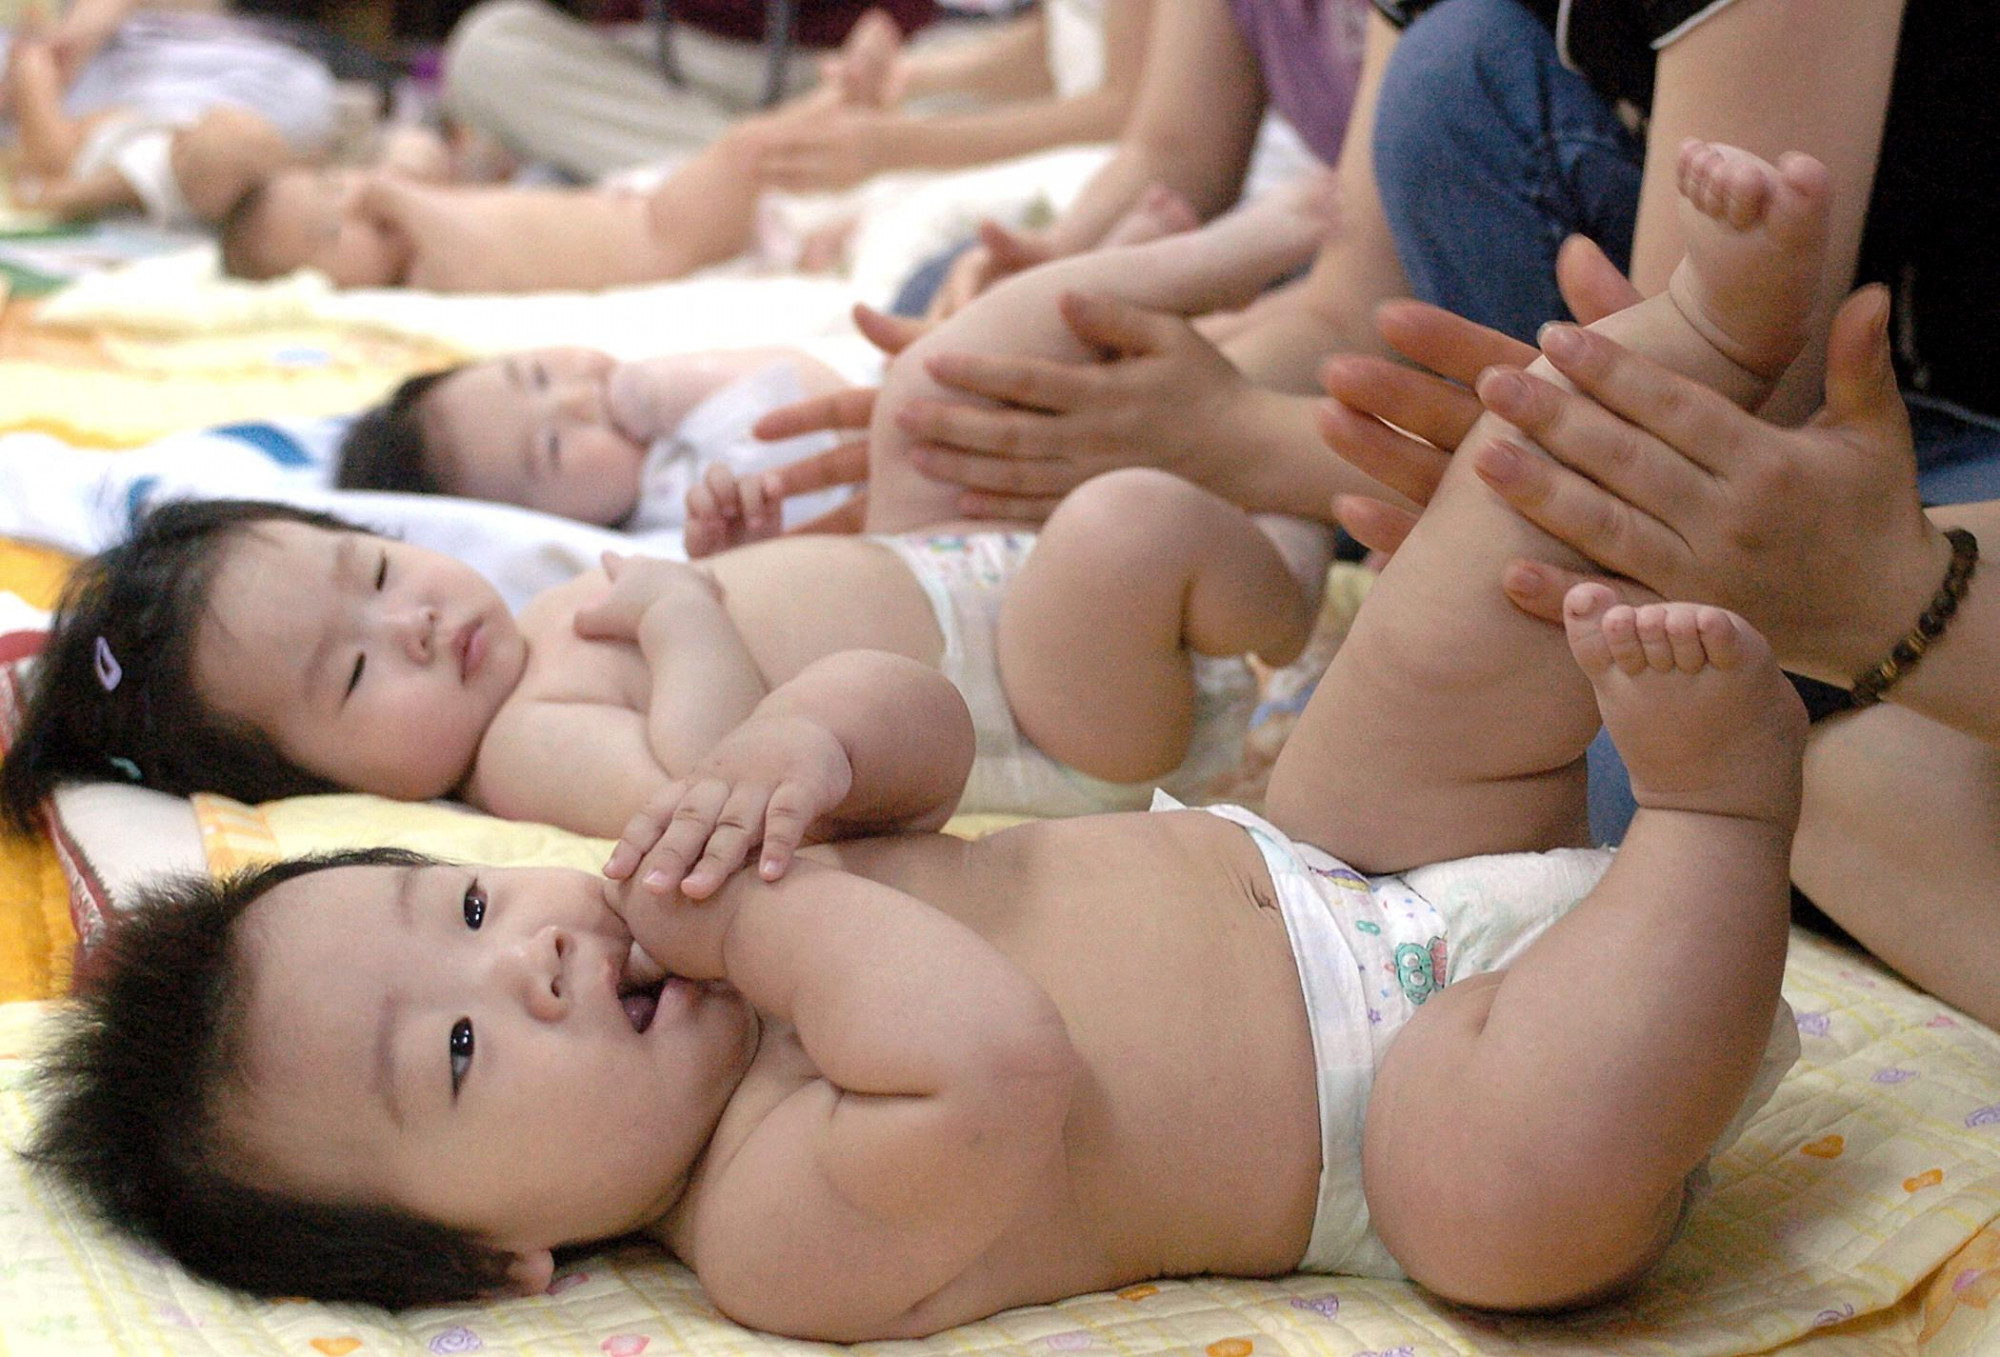 Dél-Korea megdöntötte a saját rekordját, továbbra is ott születik a legkevesebb gyerek